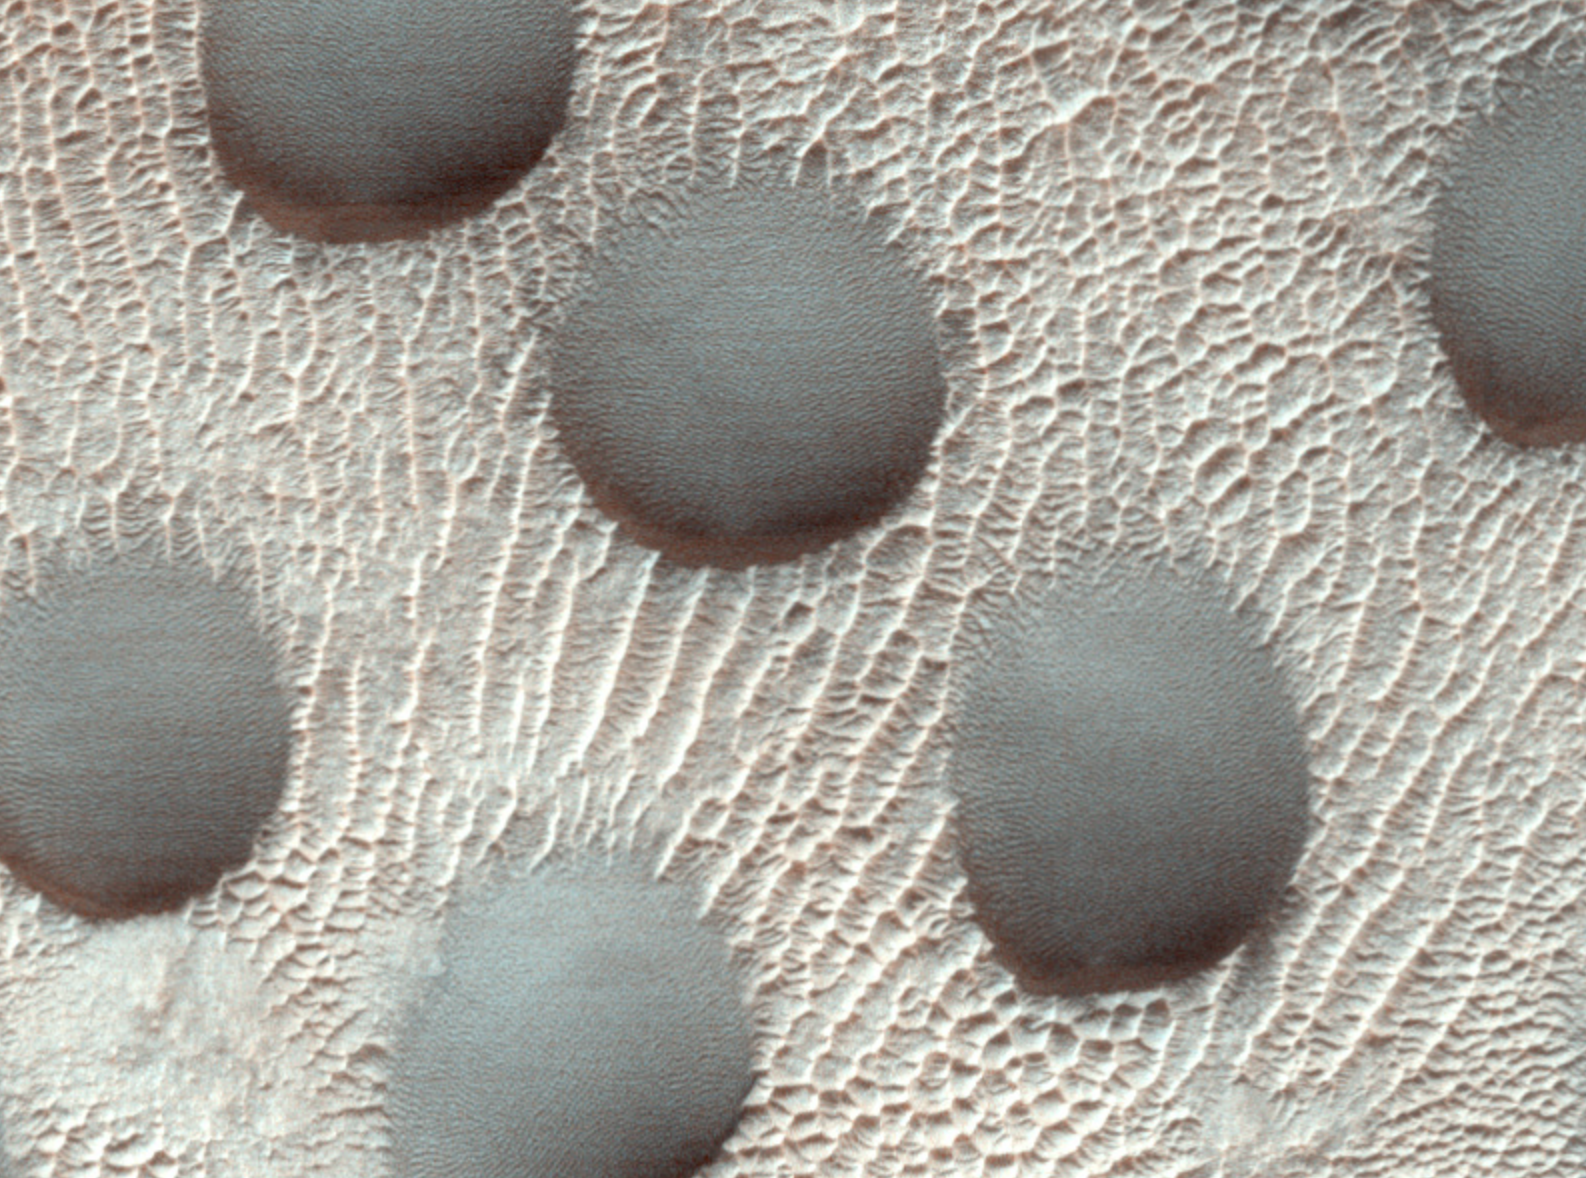 Ασυνήθιστοι αμμόλοφοι στον πλανήτη Άρη-1